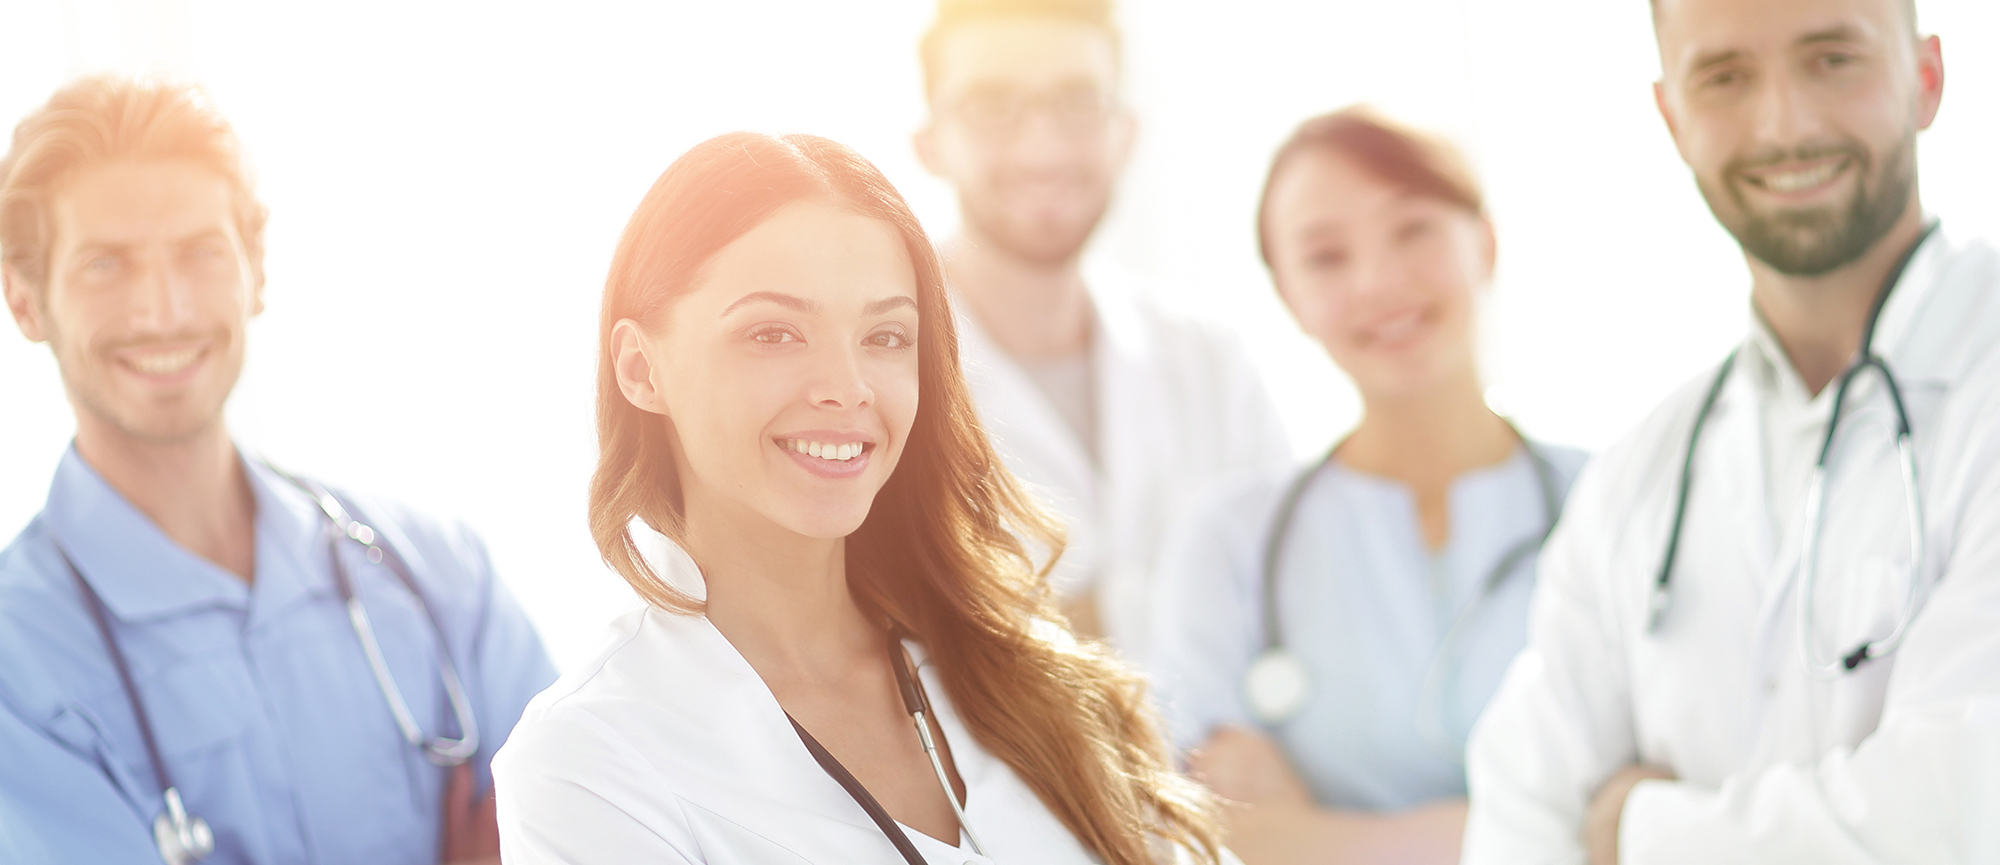 Startbild: Foto von einer Gruppe von Ärztinnen und Ärzten, im Vordergrund eine lächelnde junge Ärztin